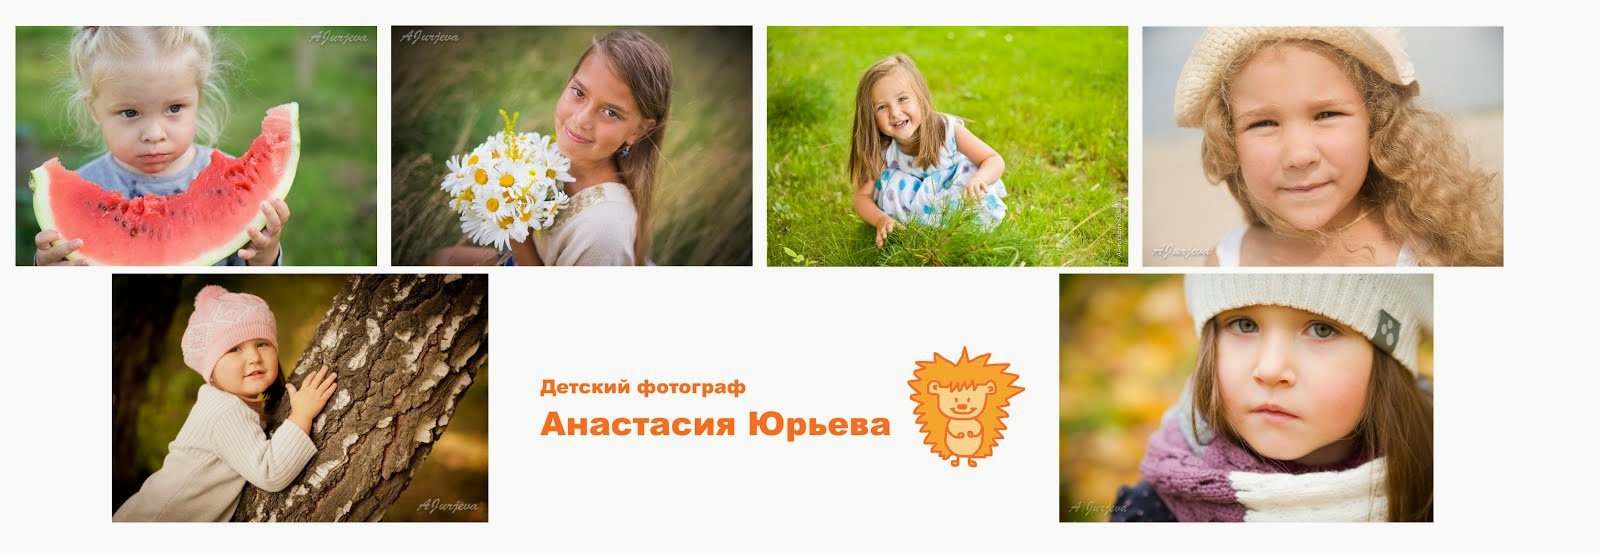 Детский фотограф Анастасия Юрьева